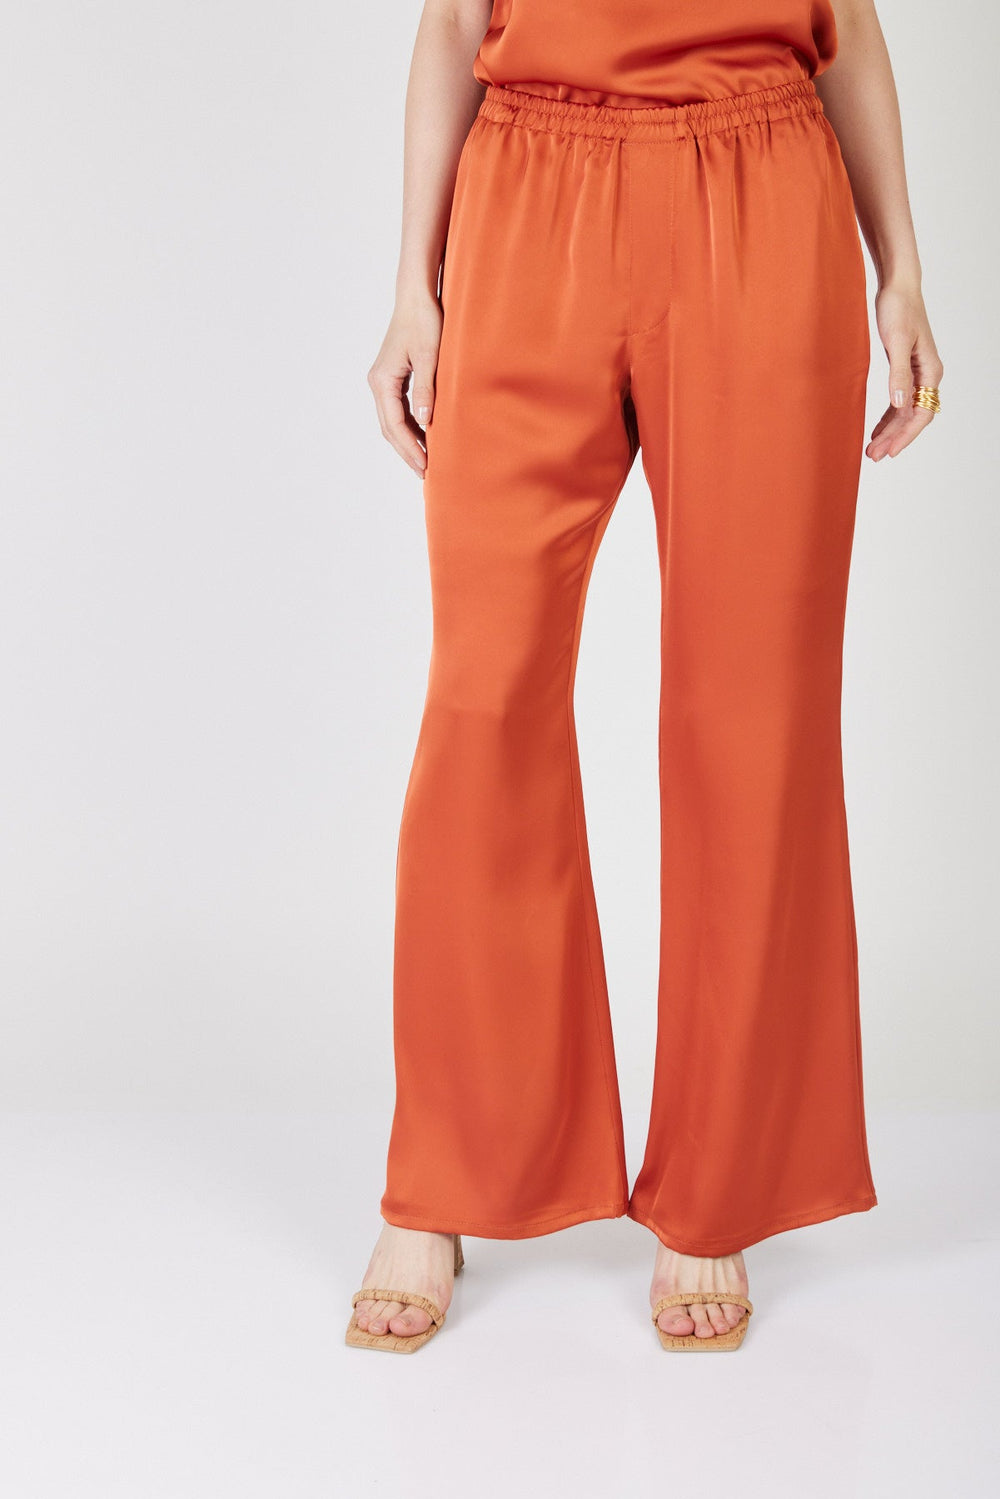 מכנסיים רחבים האנטר בצבע חמרה - Razili X Noritamy